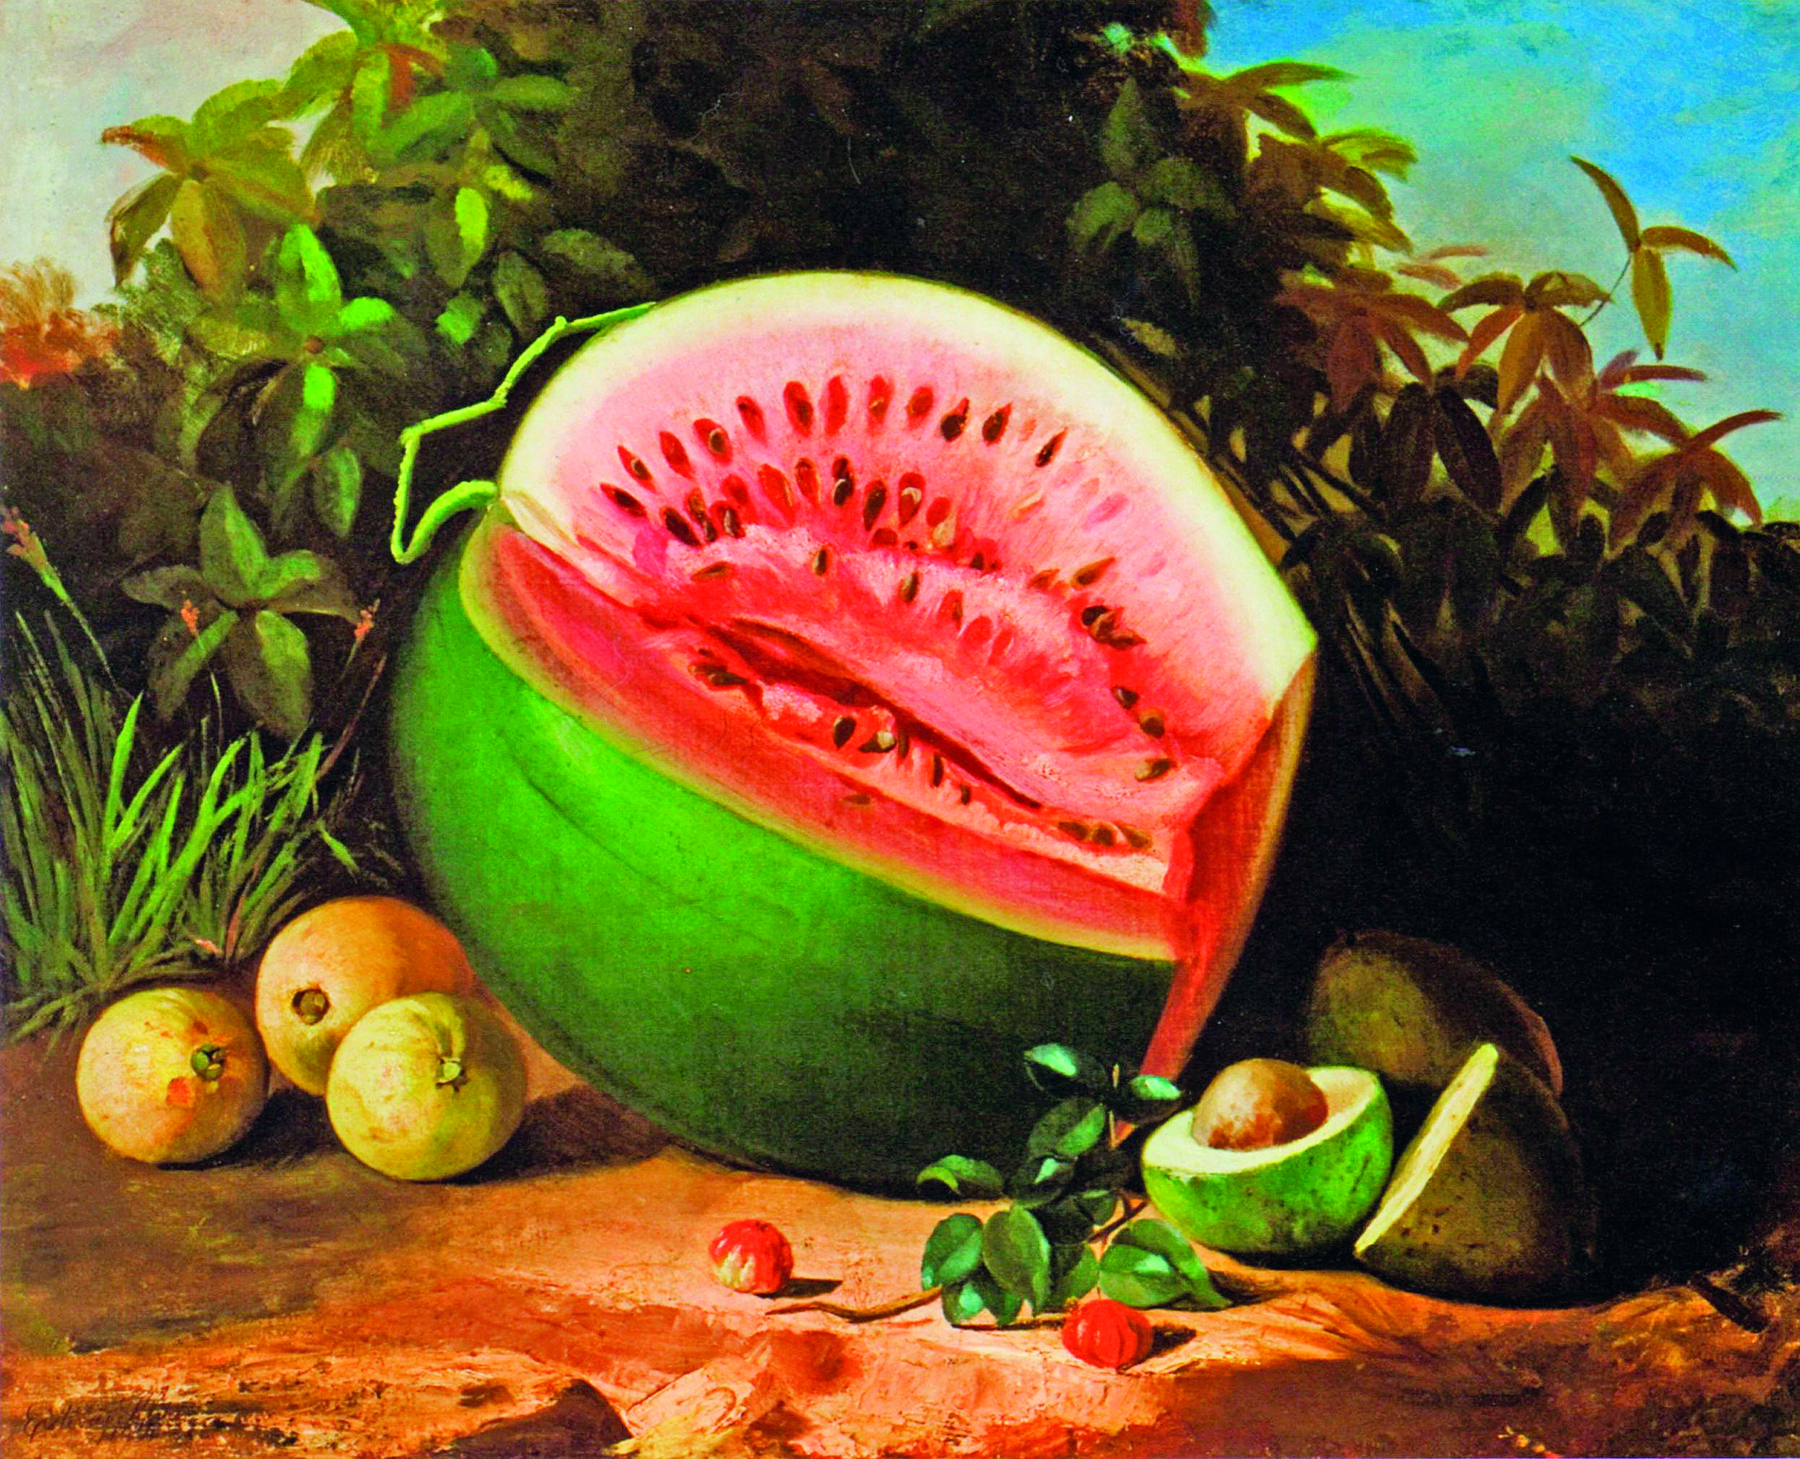 Pintura. No centro da imagem, frutas sobre um solo terroso, destaque para a melancia aberta. À esquerda, goiabas; à direita, um abacate aberto. Ao fundo, folhas e plantas.